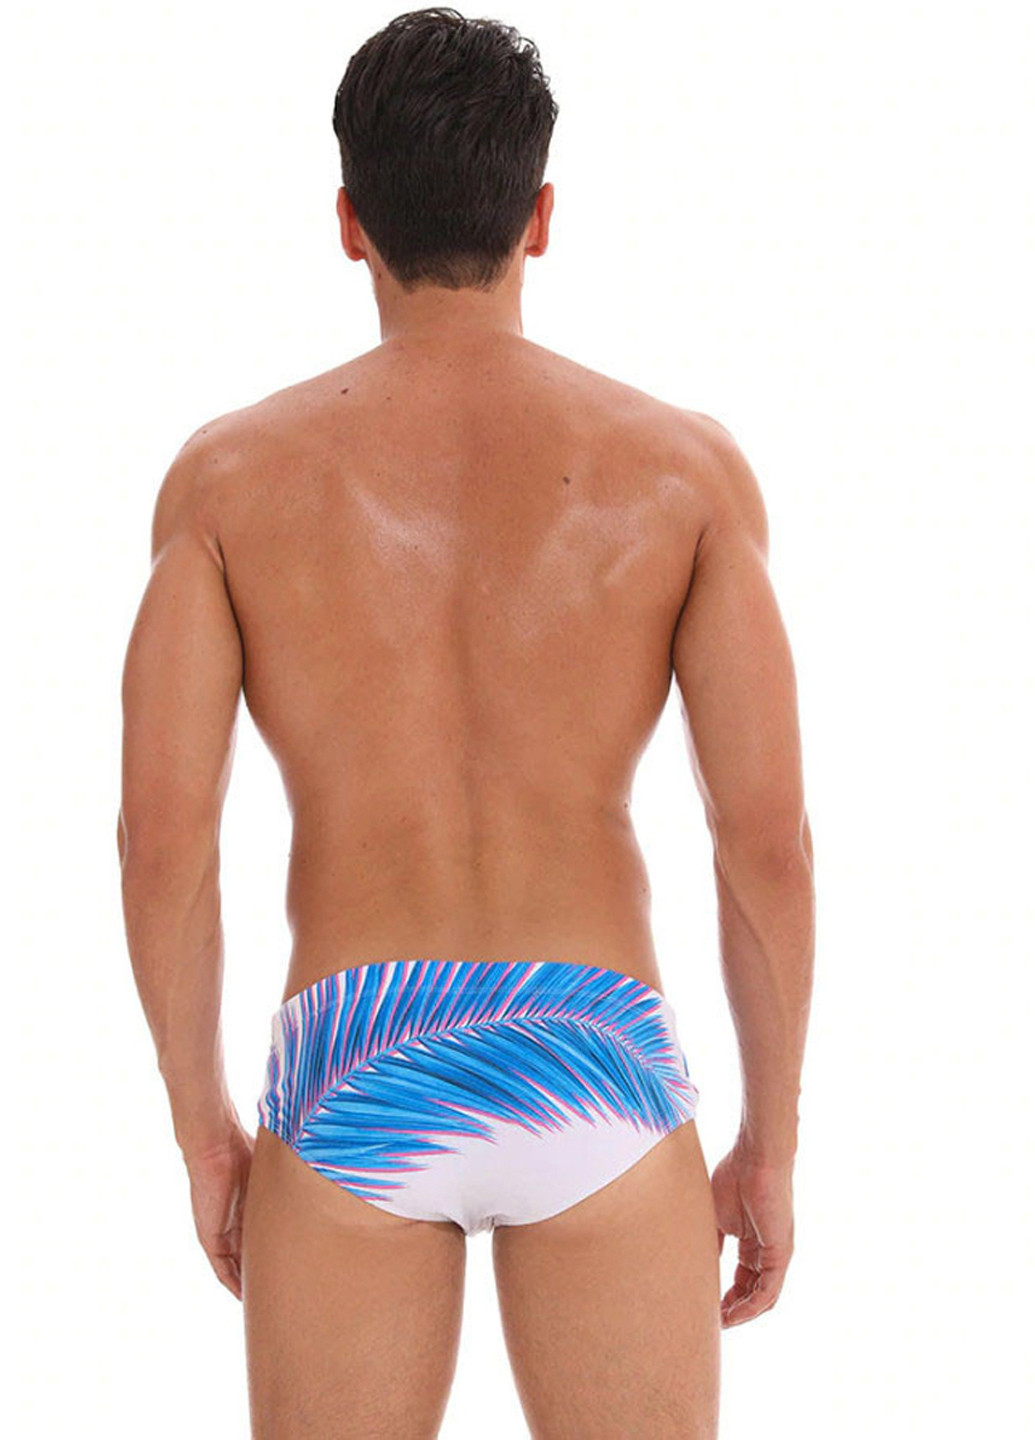 Мужские белые пляжные плавки с увеличивающим эффектом брифы Escatch